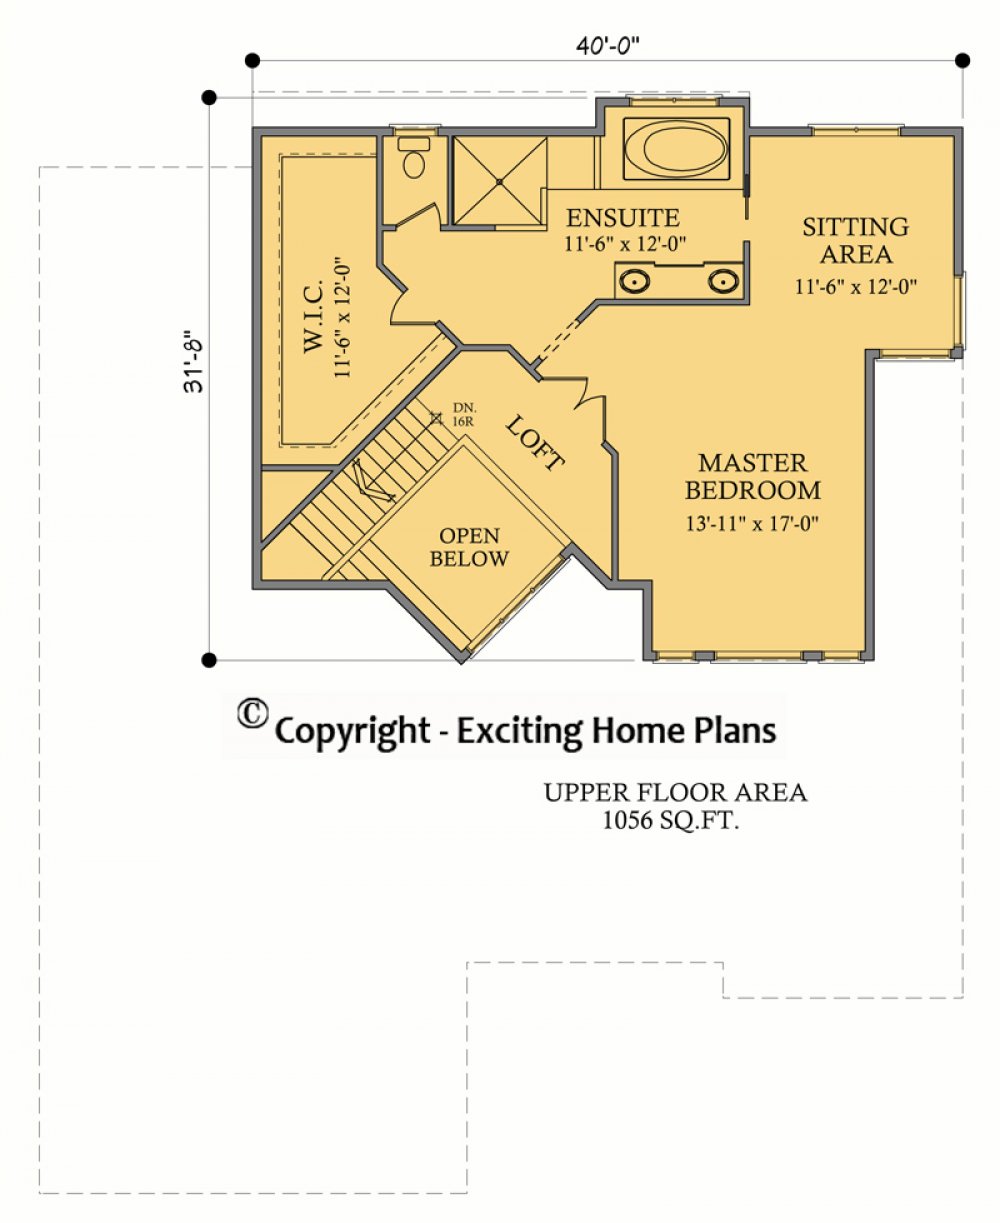 House Plan E1070-10 Upper Floor Plan